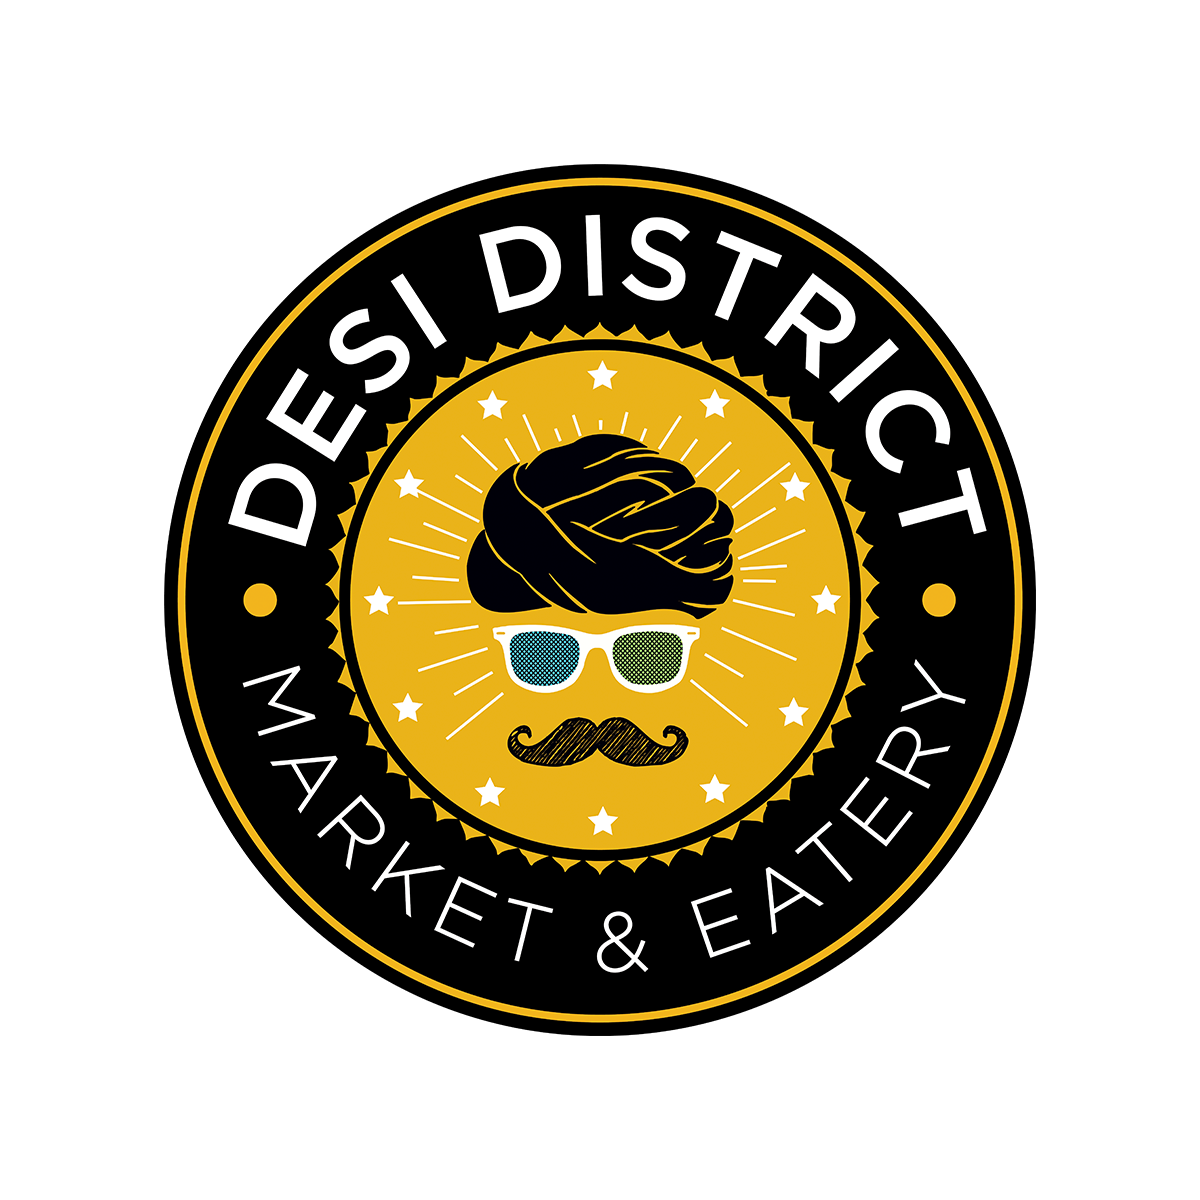 Desi District restaurant